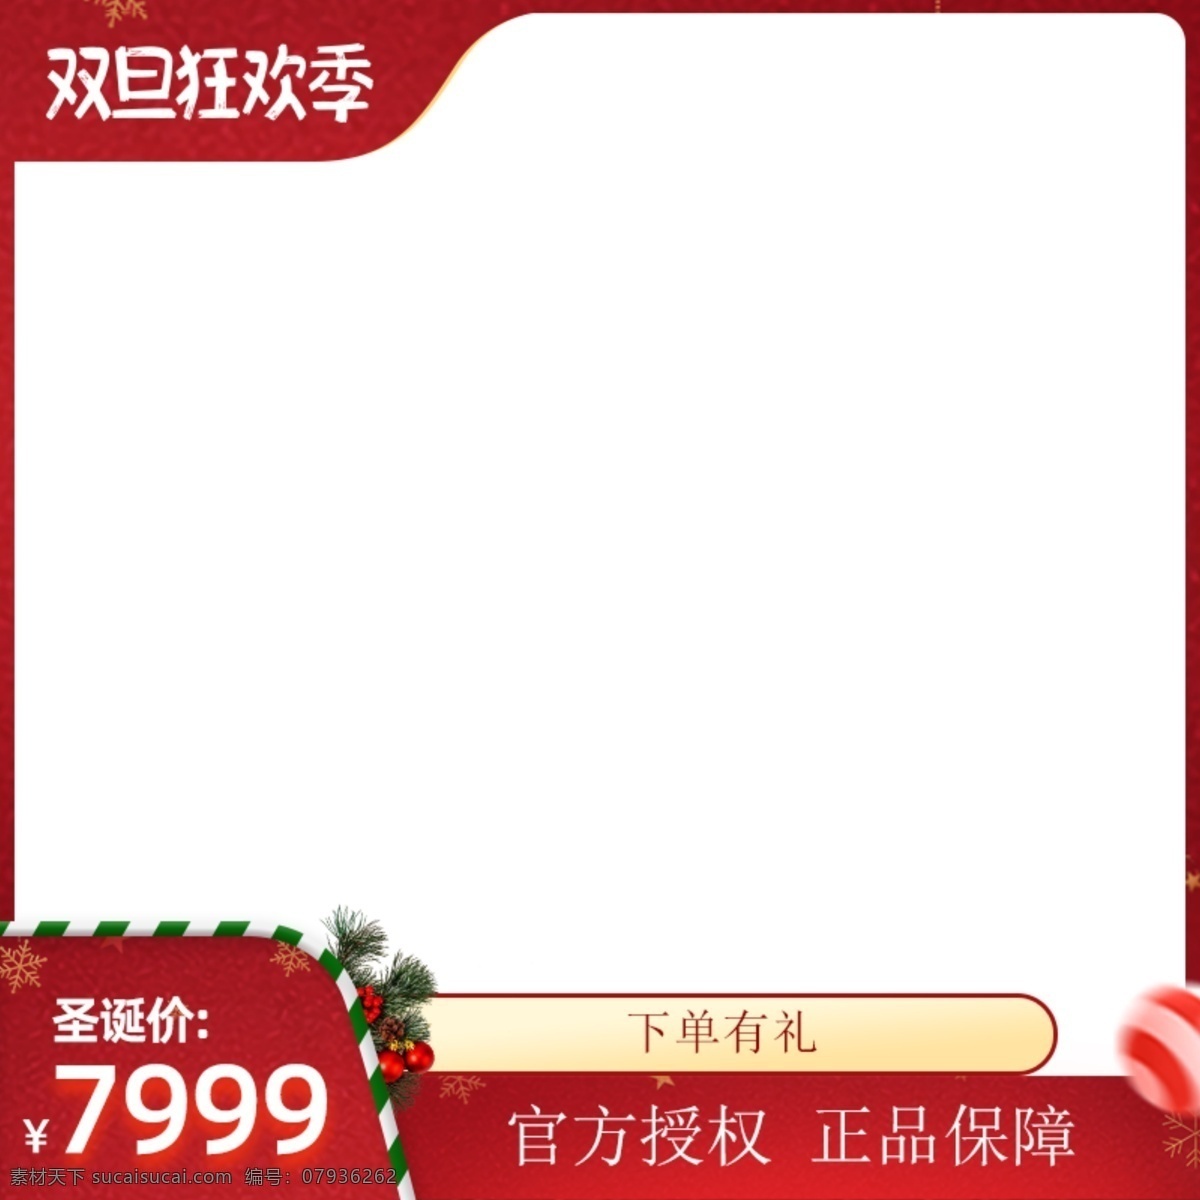 圣诞边框图片 圣诞边框 红色边框 圣诞鹿班 边框 圣诞主图